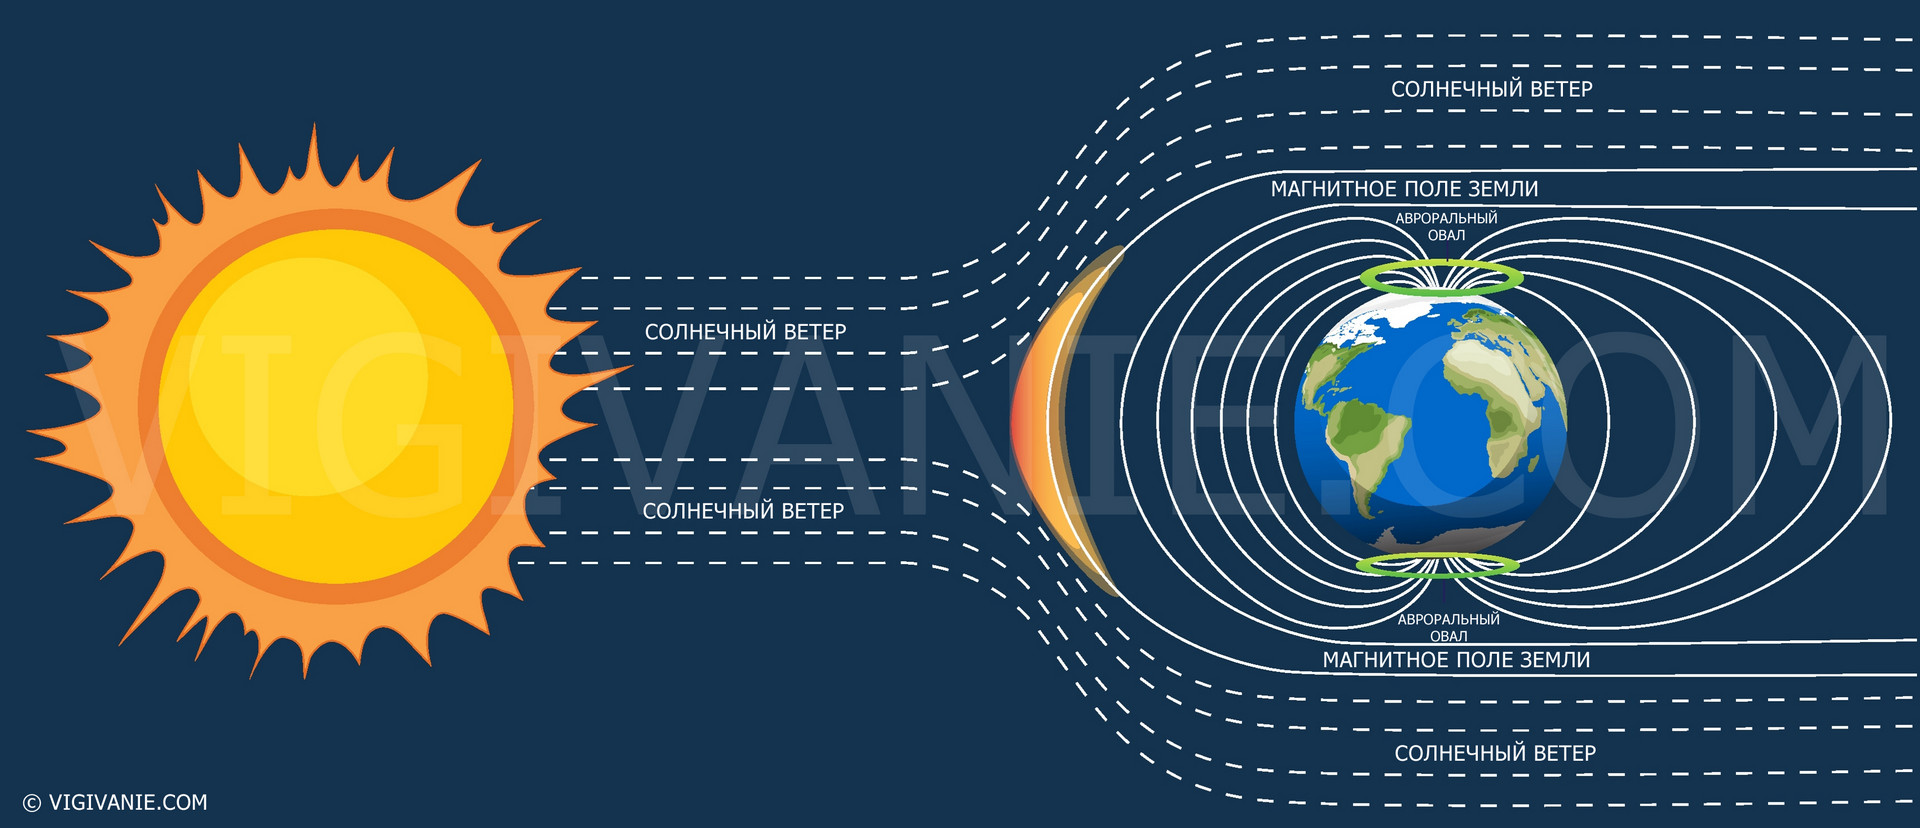 описание того, как возникают магнитные бури, как солнечный ветер движется по направлению к нашей планете и контактирует с магнитным полем Земли